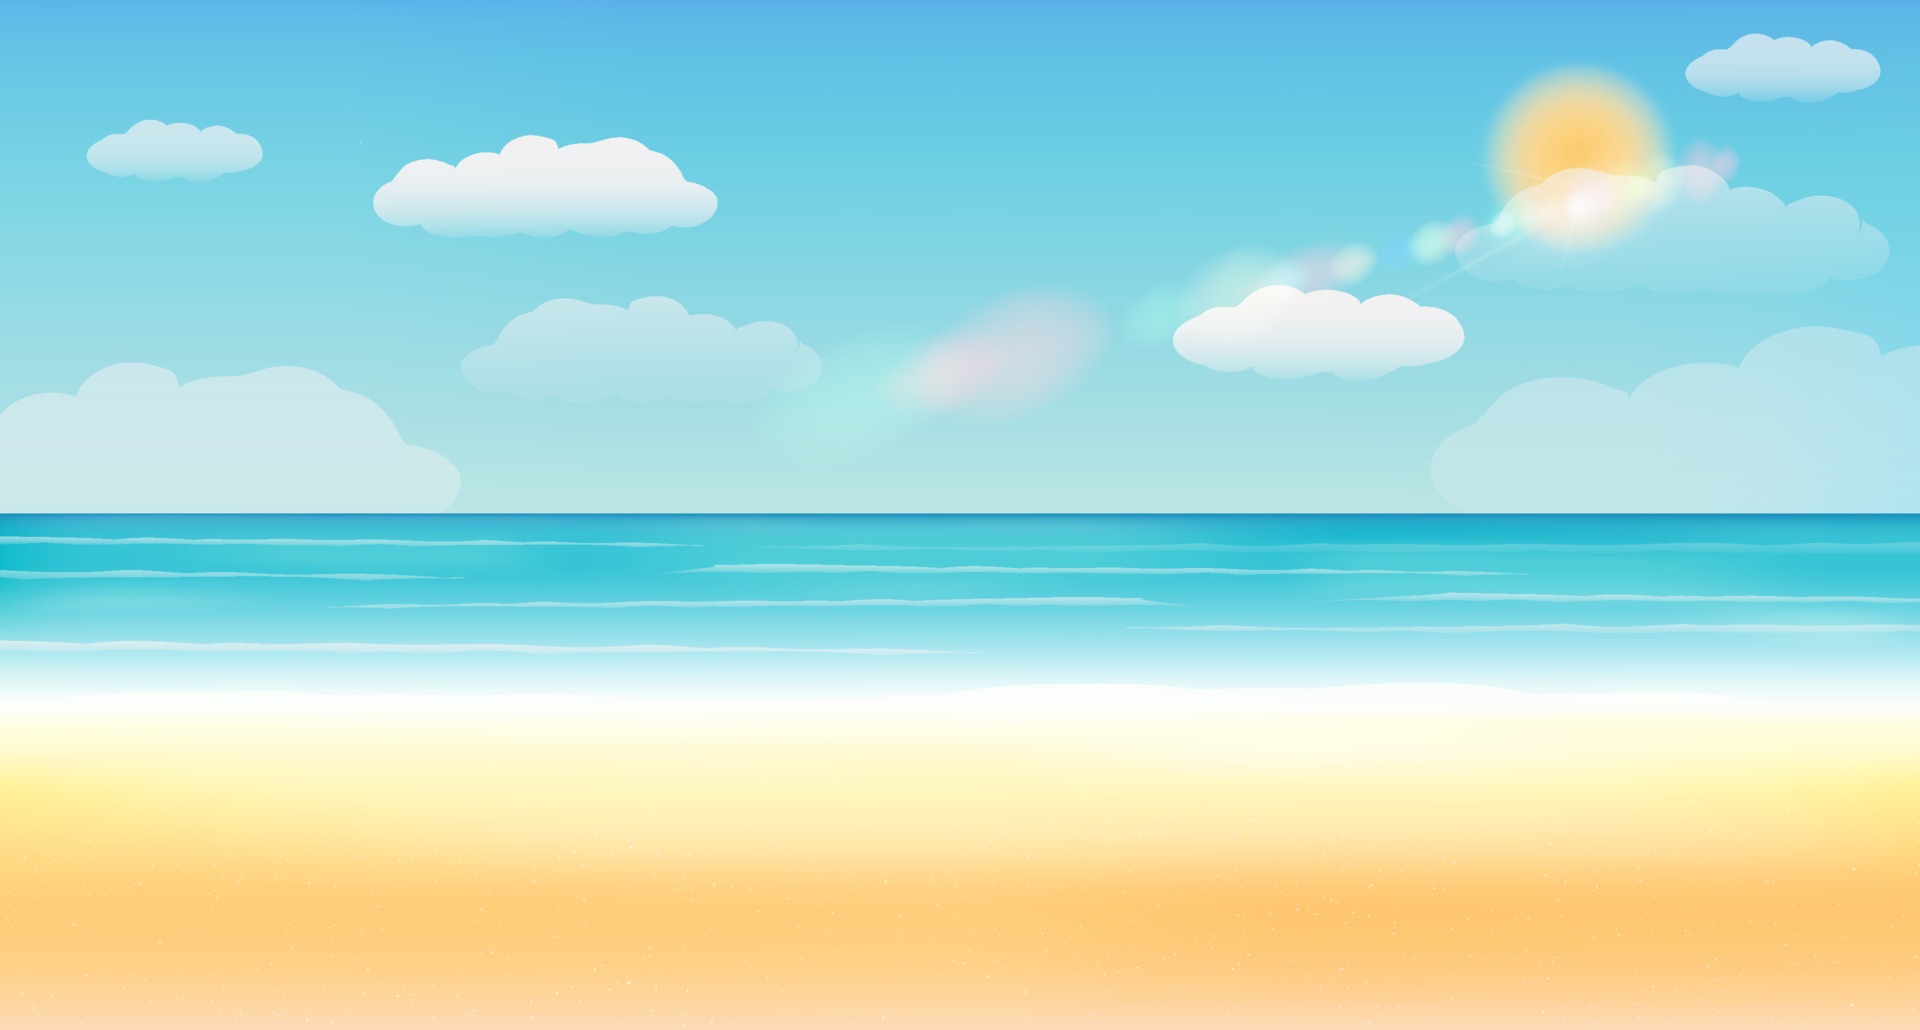 Bãi biển: Đến với bãi biển, bạn sẽ được tận hưởng những giây phút yên bình, đắm mình trong làn nước trong vắt và làn gió biển mát mẻ. Hình ảnh của chiếc phao buồn nhẹ trên nền cát trắng mịn sẽ đưa bạn đến với thế giới của sự thư giãn và tận hưởng.